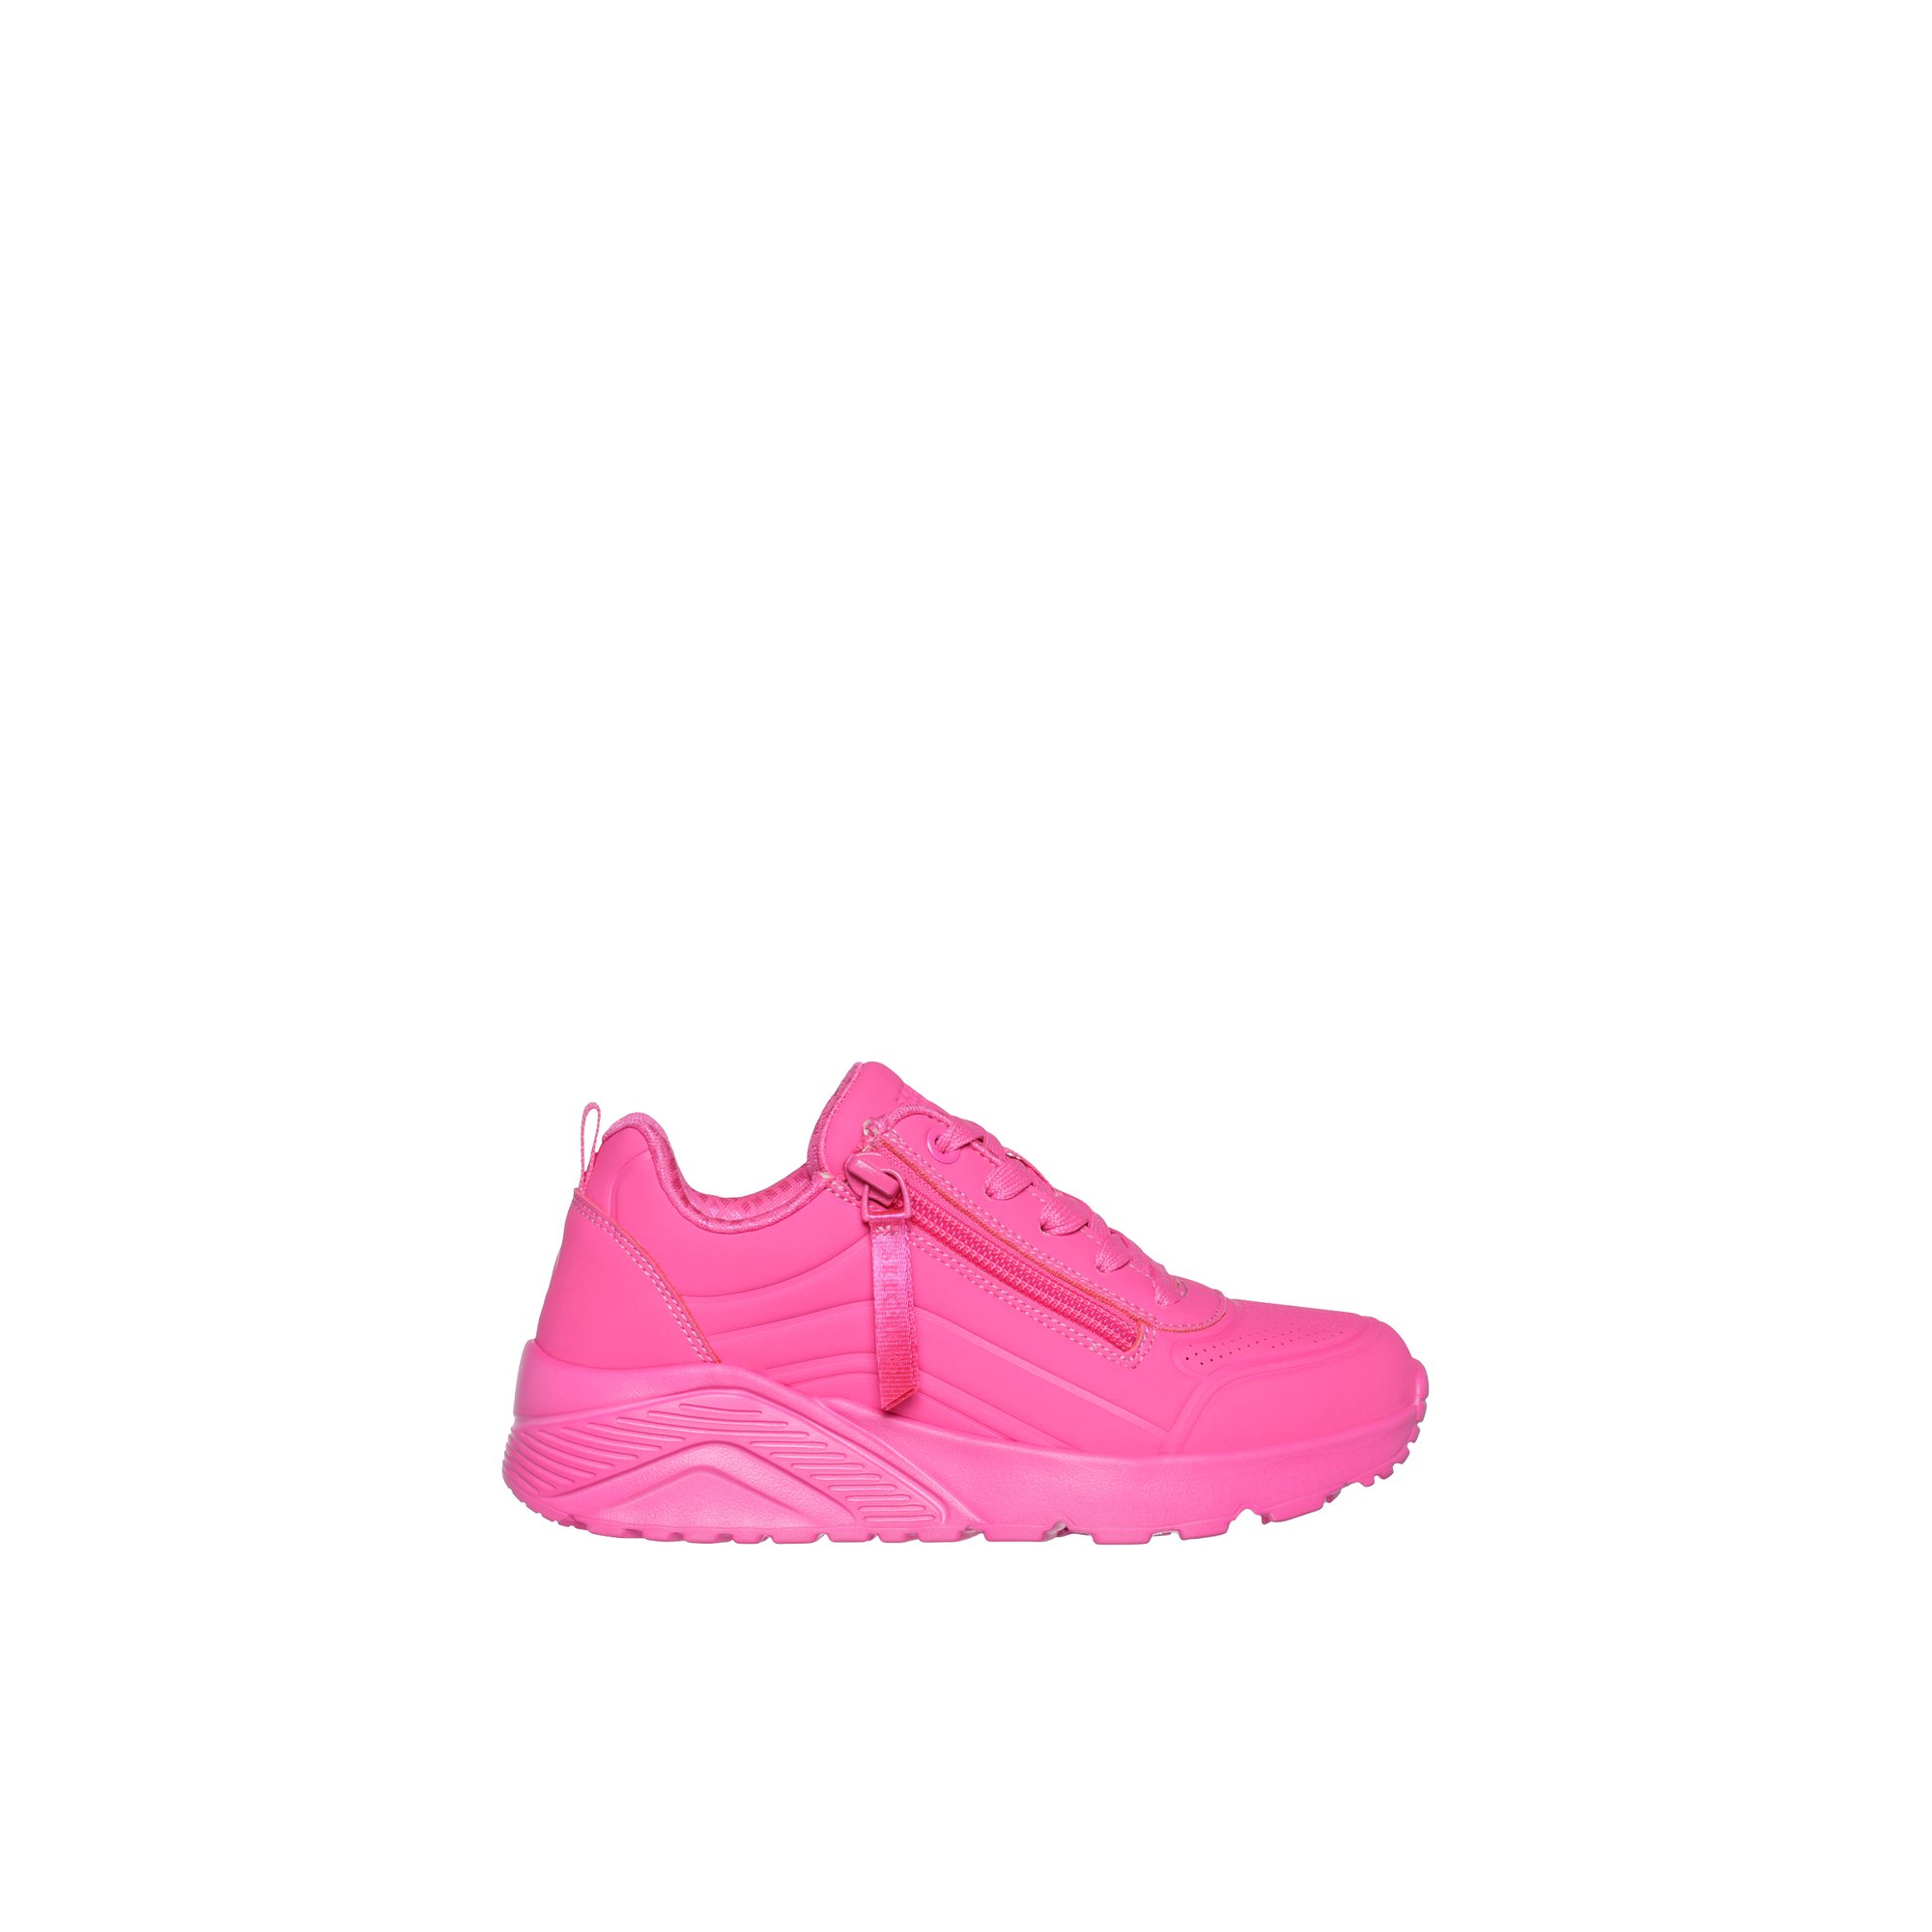 Skechers Unoneon-jg - Kids Girls Junior Athletics Shoes Pink